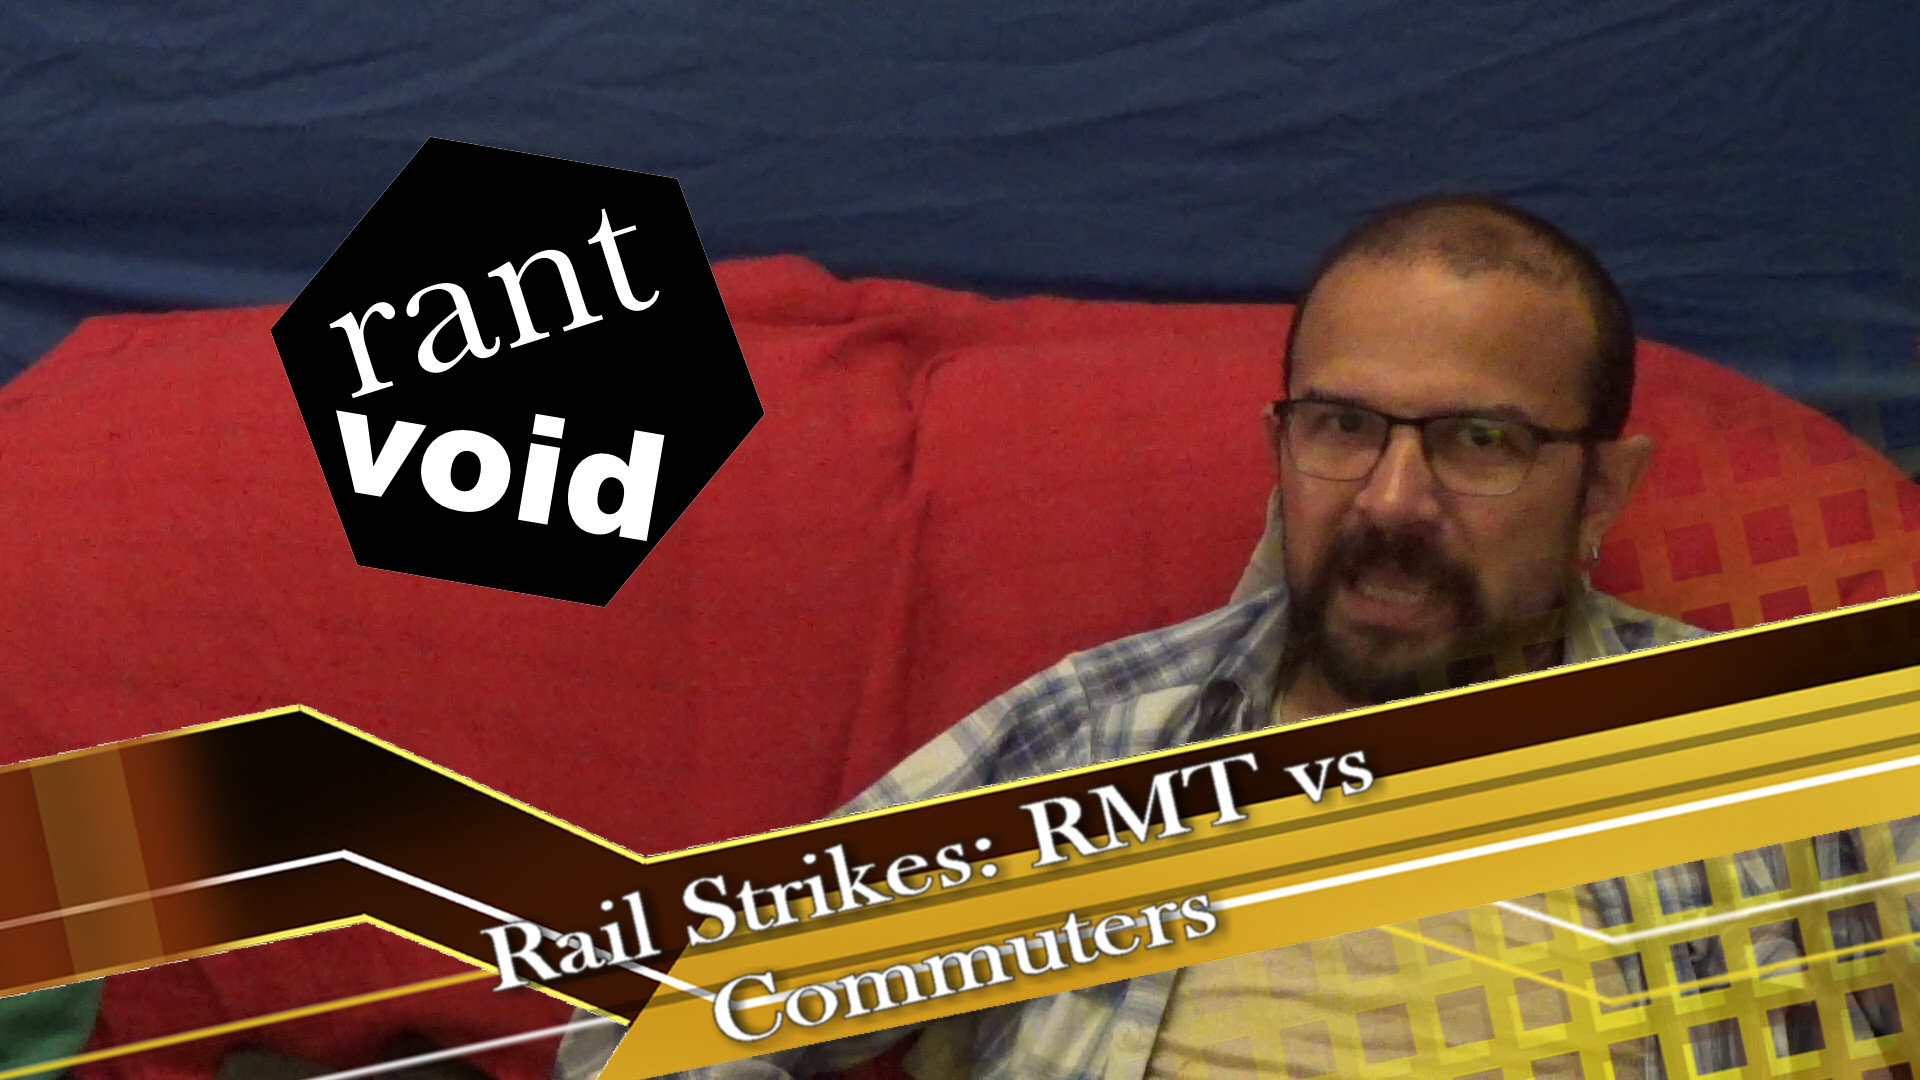 Railstrikes: RMT vs Commuters